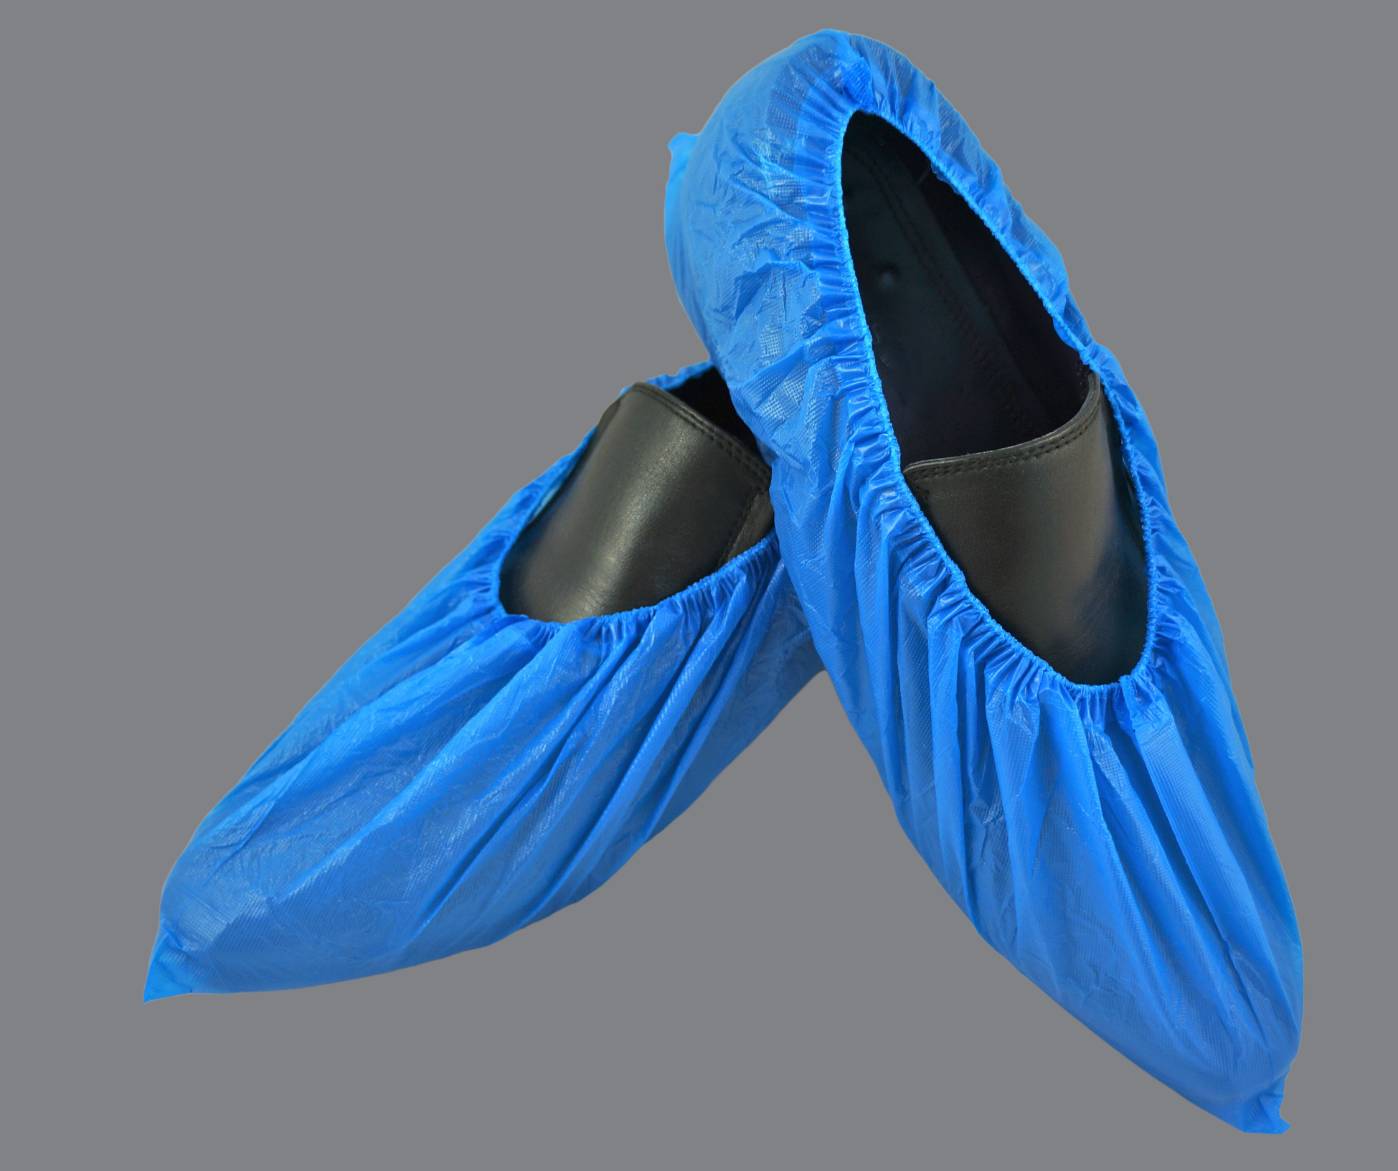 CPE Shoe cover ถุงคลุมรองเท้าพลาสติก สีฟ้า